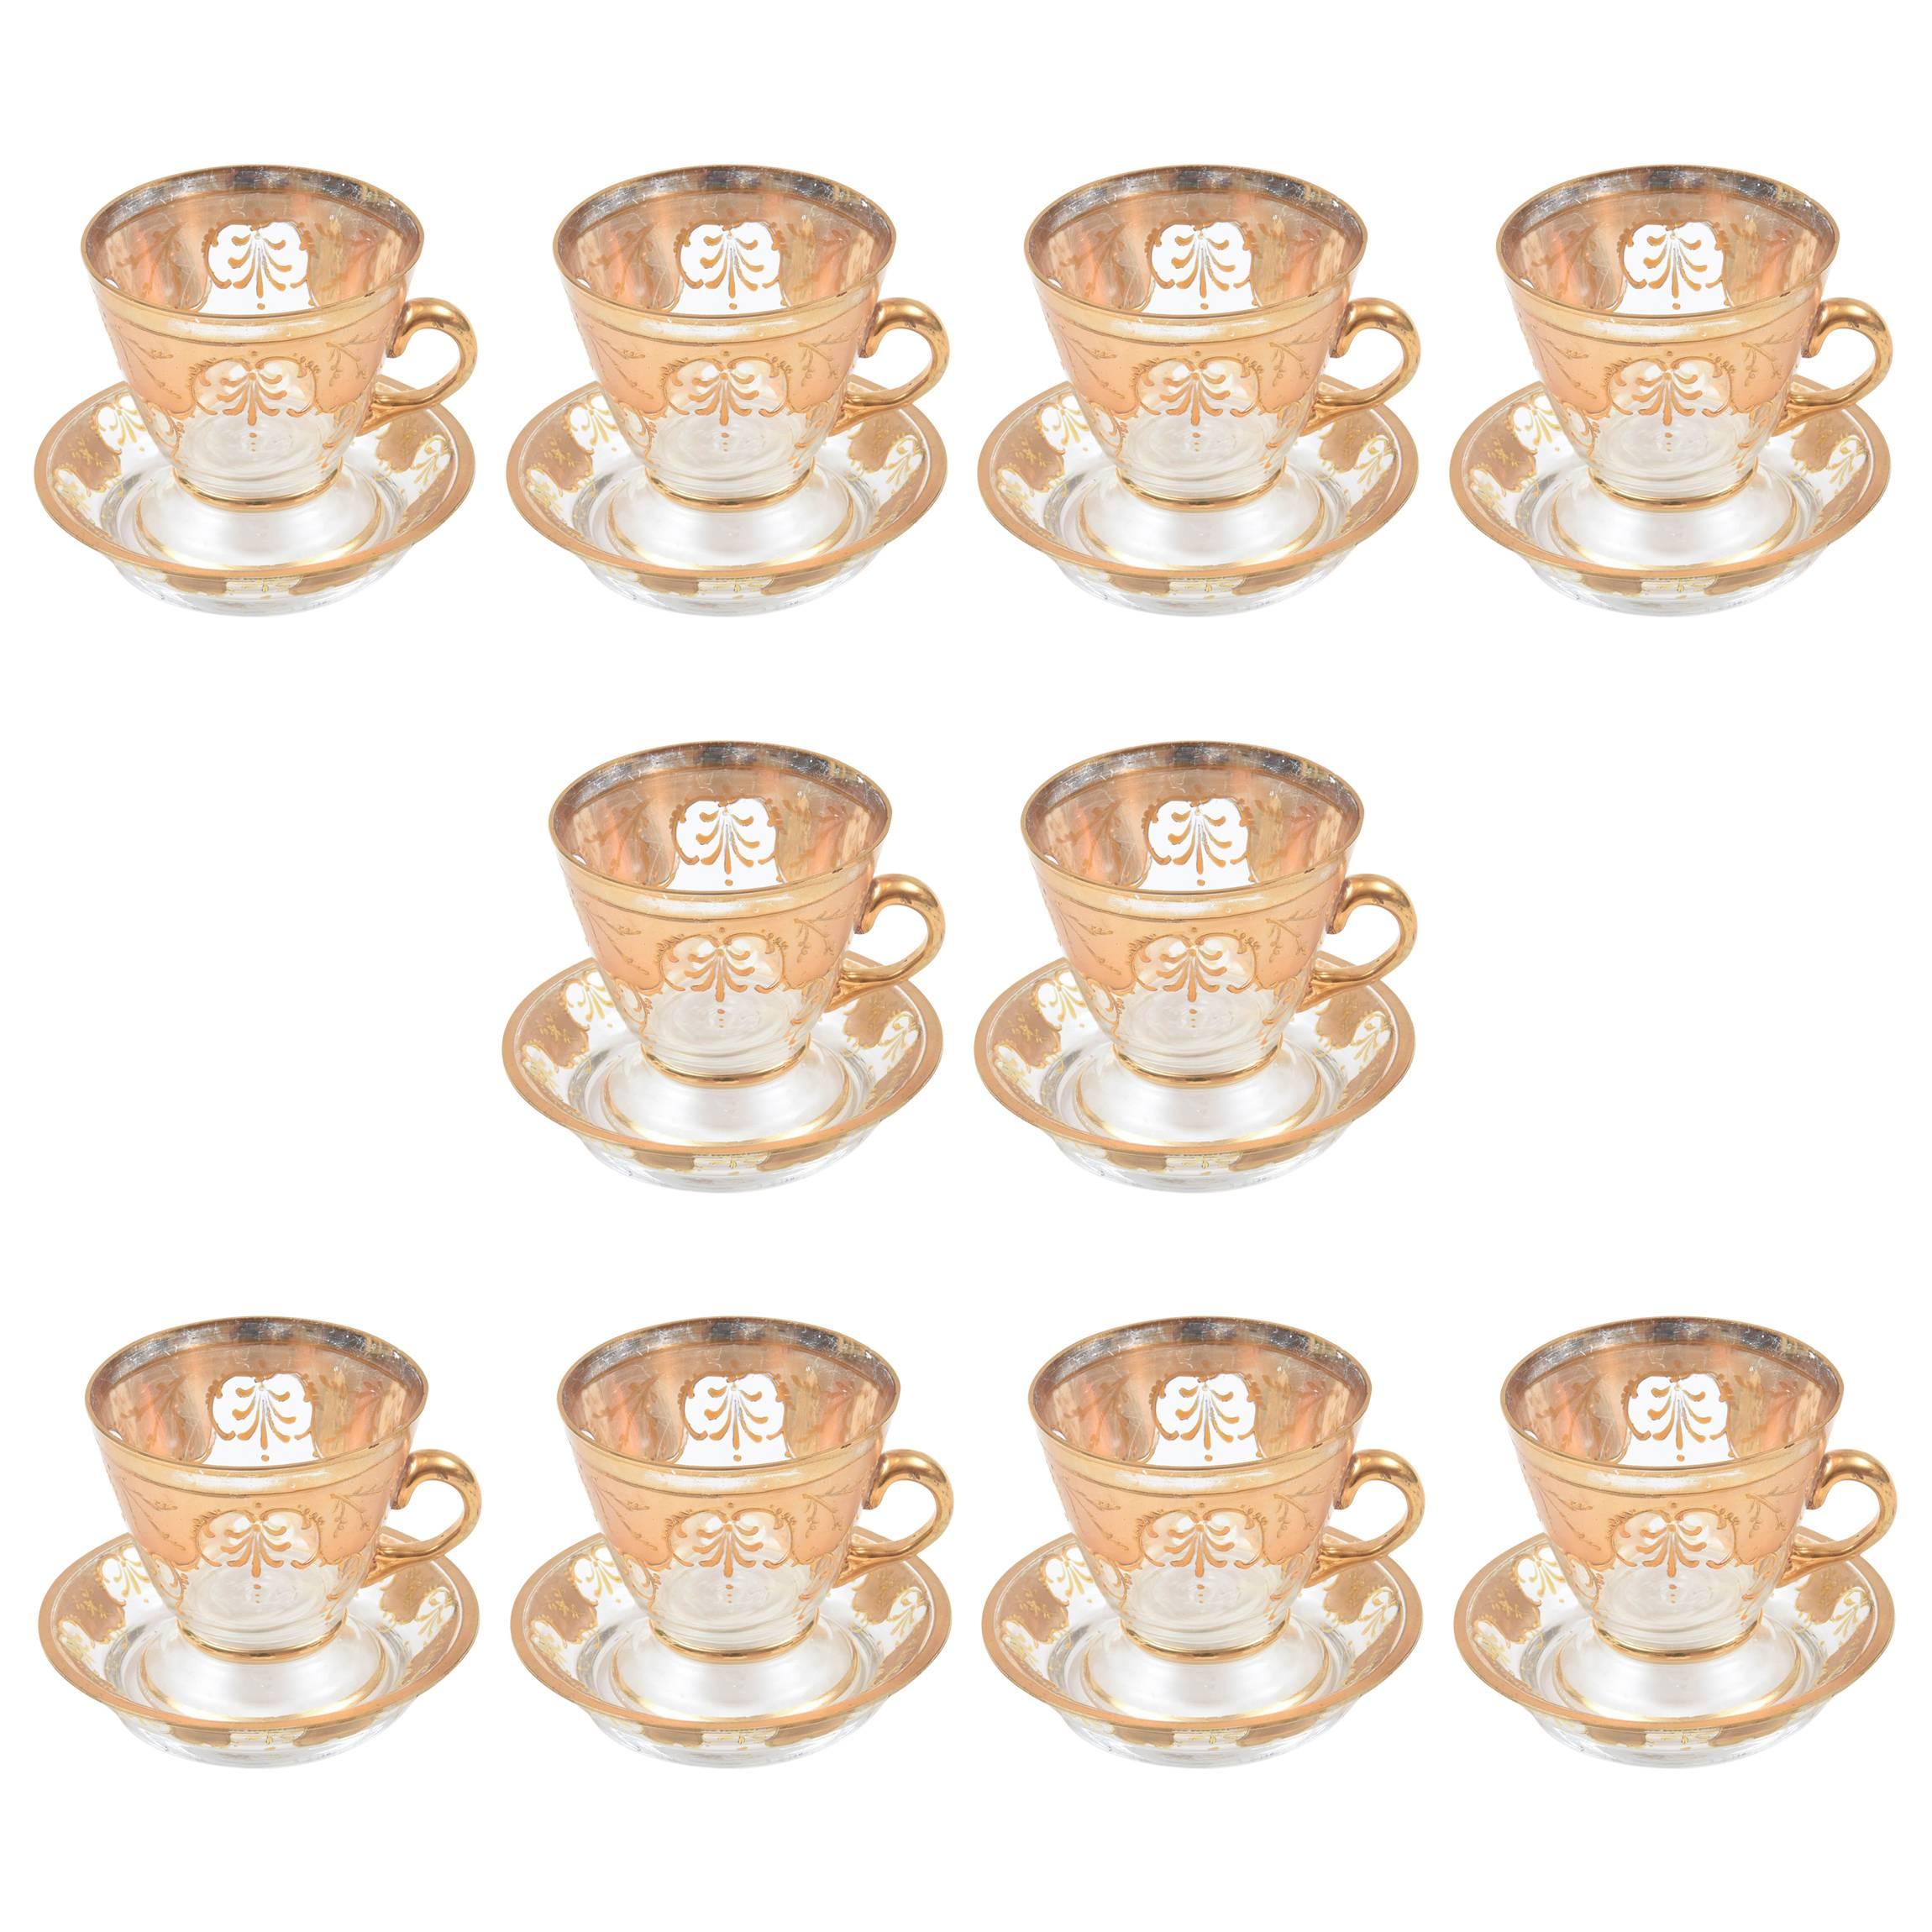 Zehn schöne Tassen und Untertassen aus vergoldetem Glas. Antiker und hervorragender Zustand